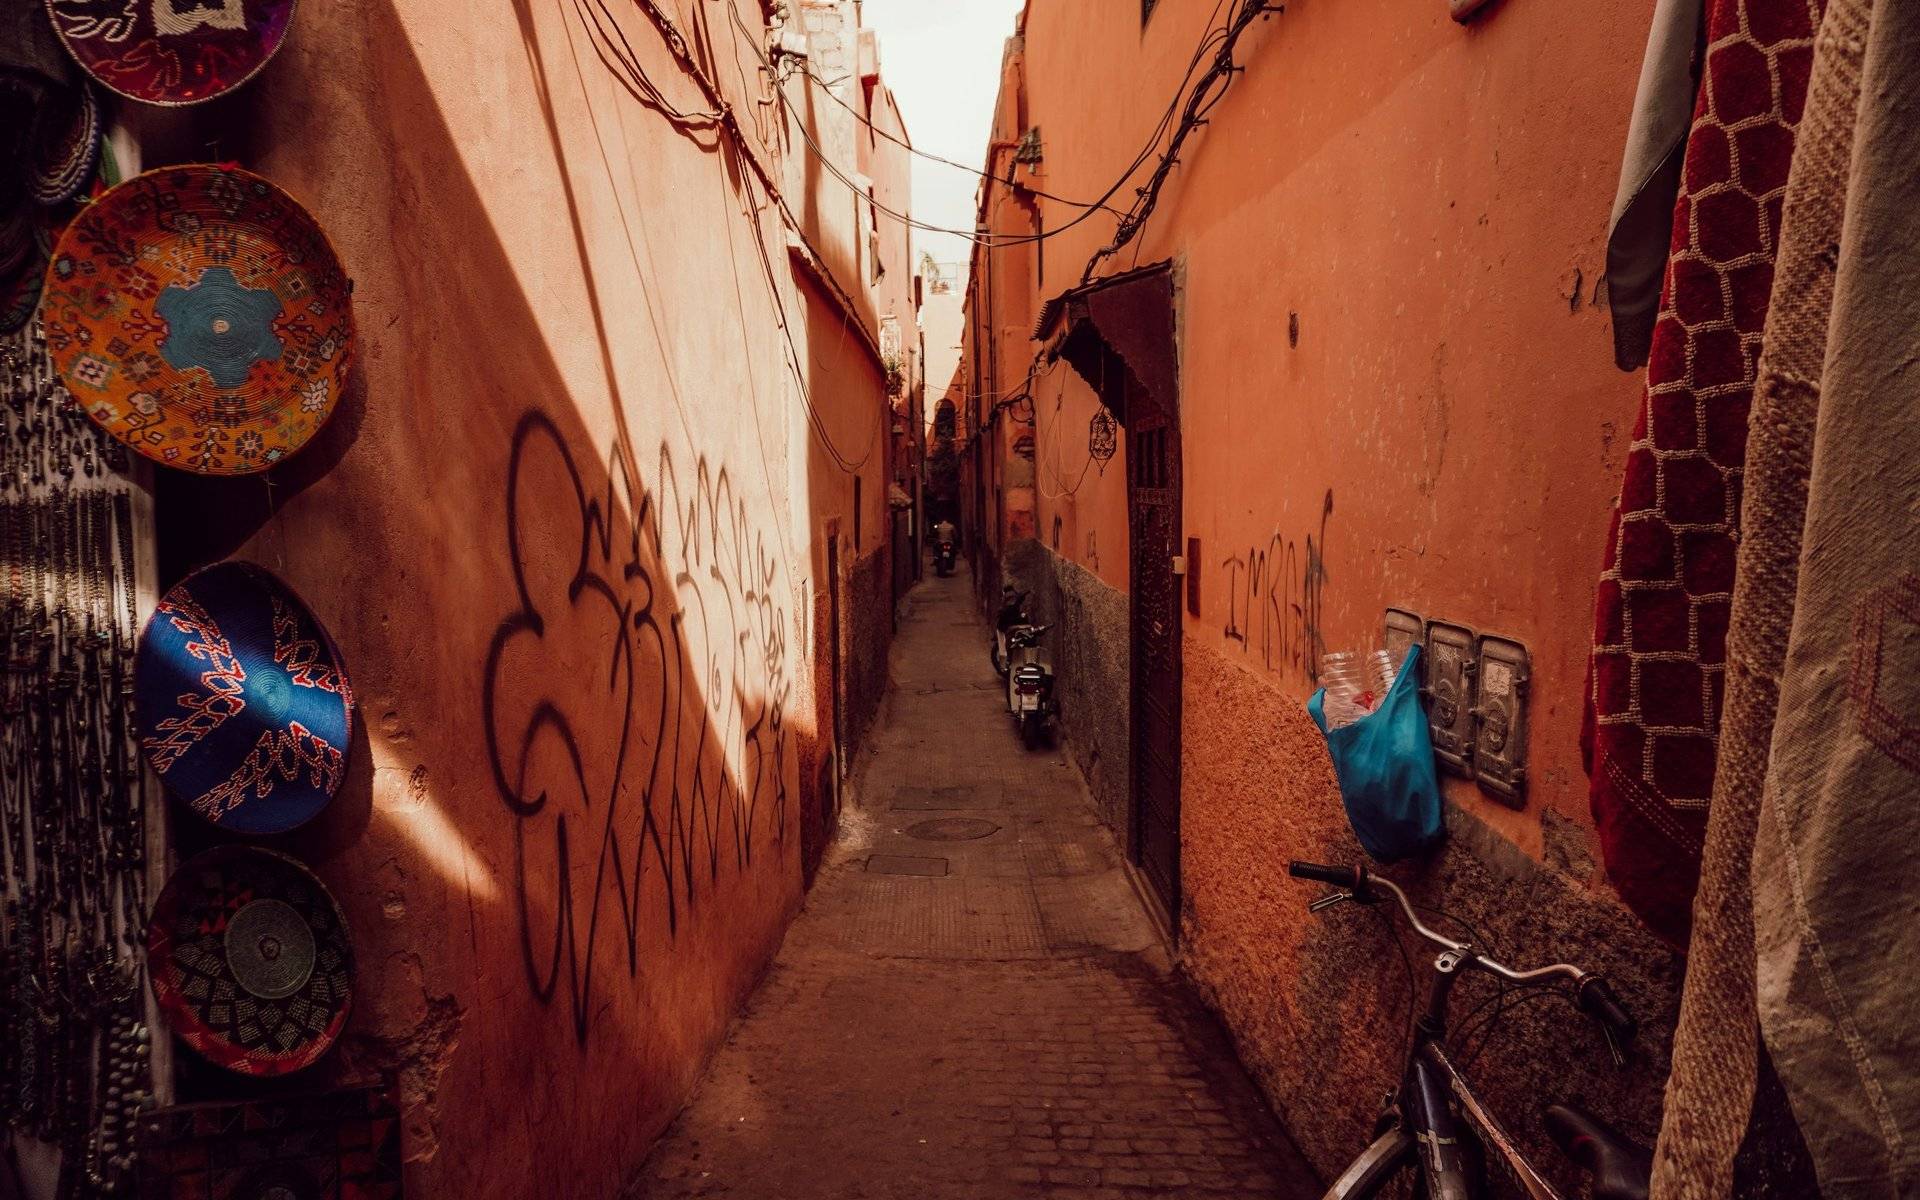 Marrakech-Safi